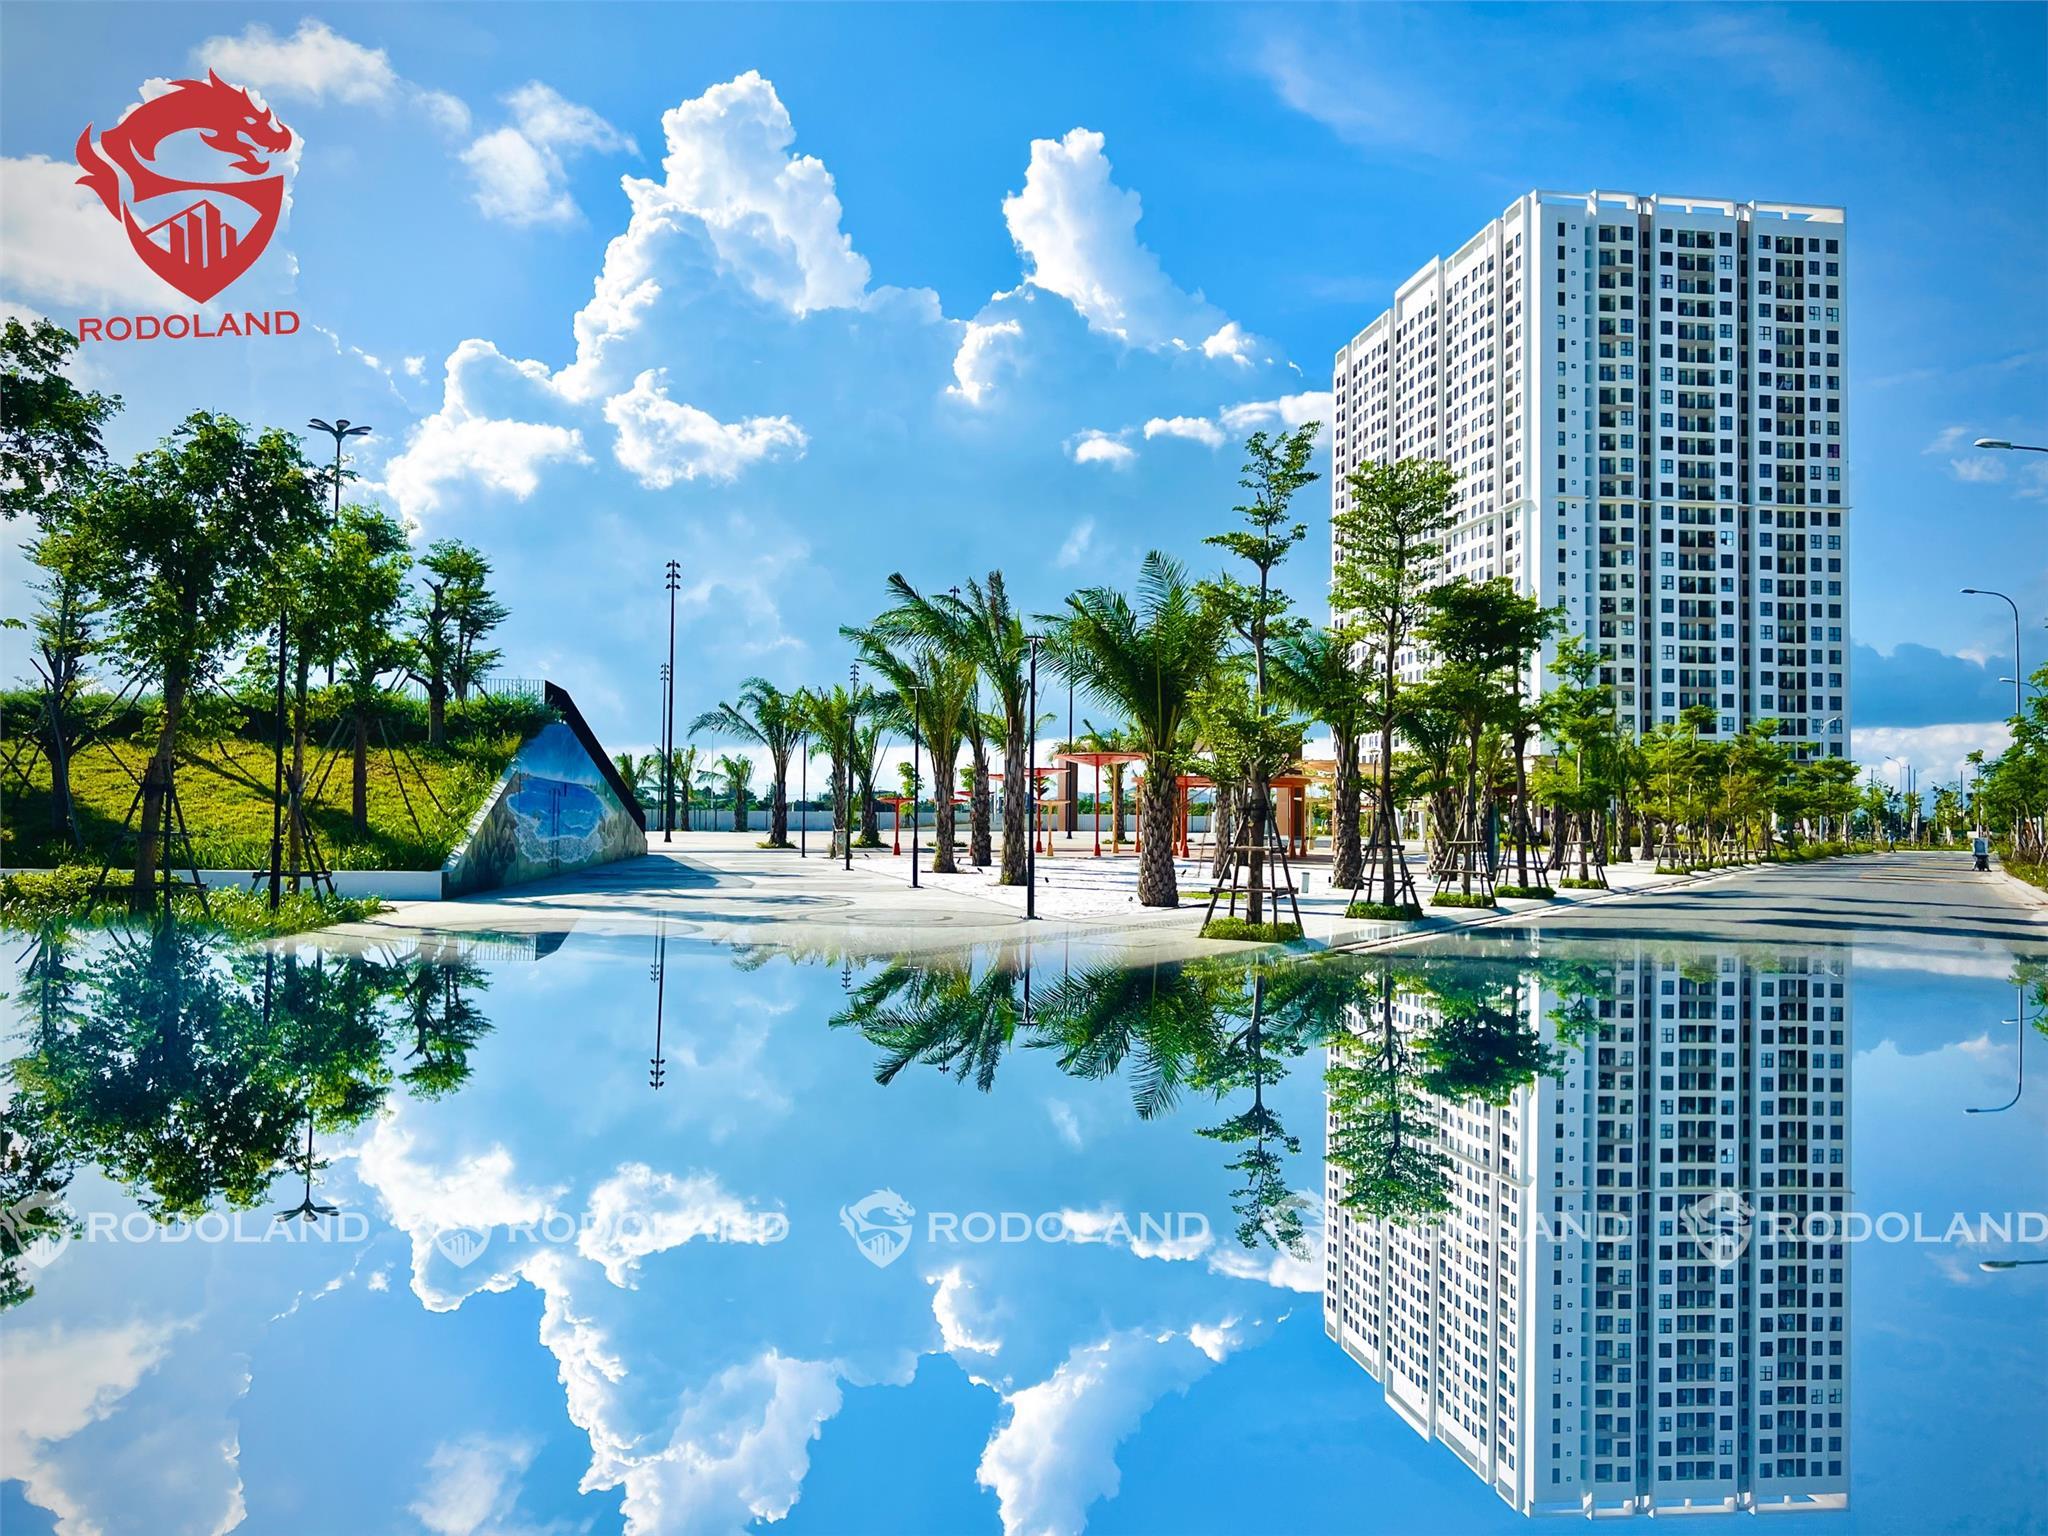 CHUYÊN FPT PLAZA: Cần mua căn hộ FPT Plaza 1 & 2 Đà Nẵng – Hãy gọi BĐS Rồng Đỏ 0905.31.89.88 3